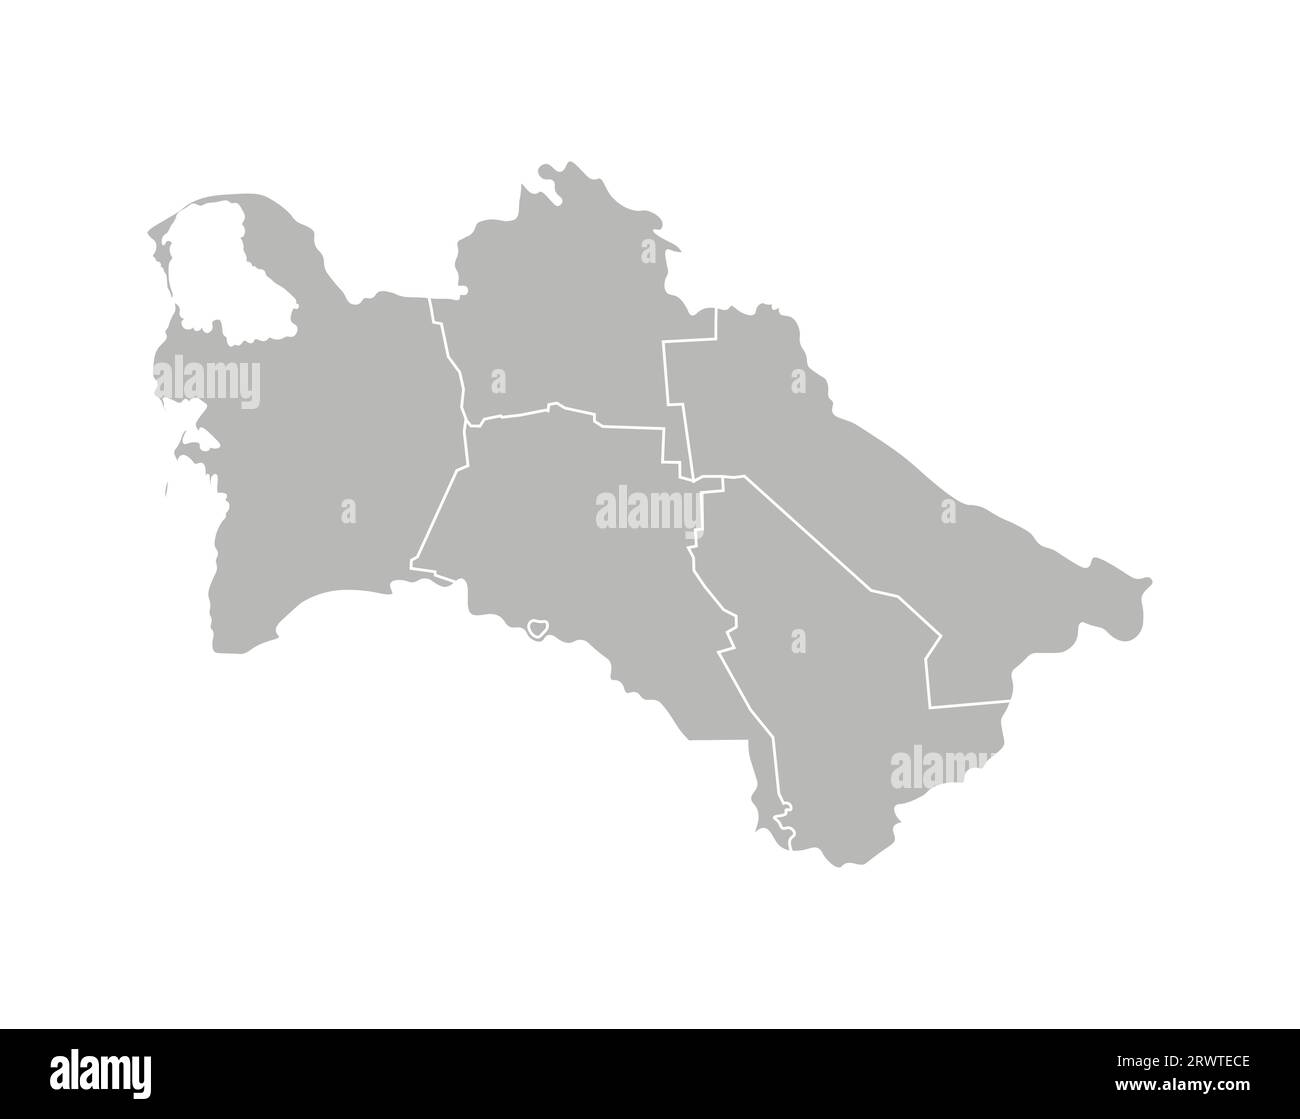 Vektorisolierte Darstellung einer vereinfachten Verwaltungskarte Turkmenistans. Grenzen der Bezirke (Regionen). Graue Silhouetten. Weiße Umrandung. Stock Vektor